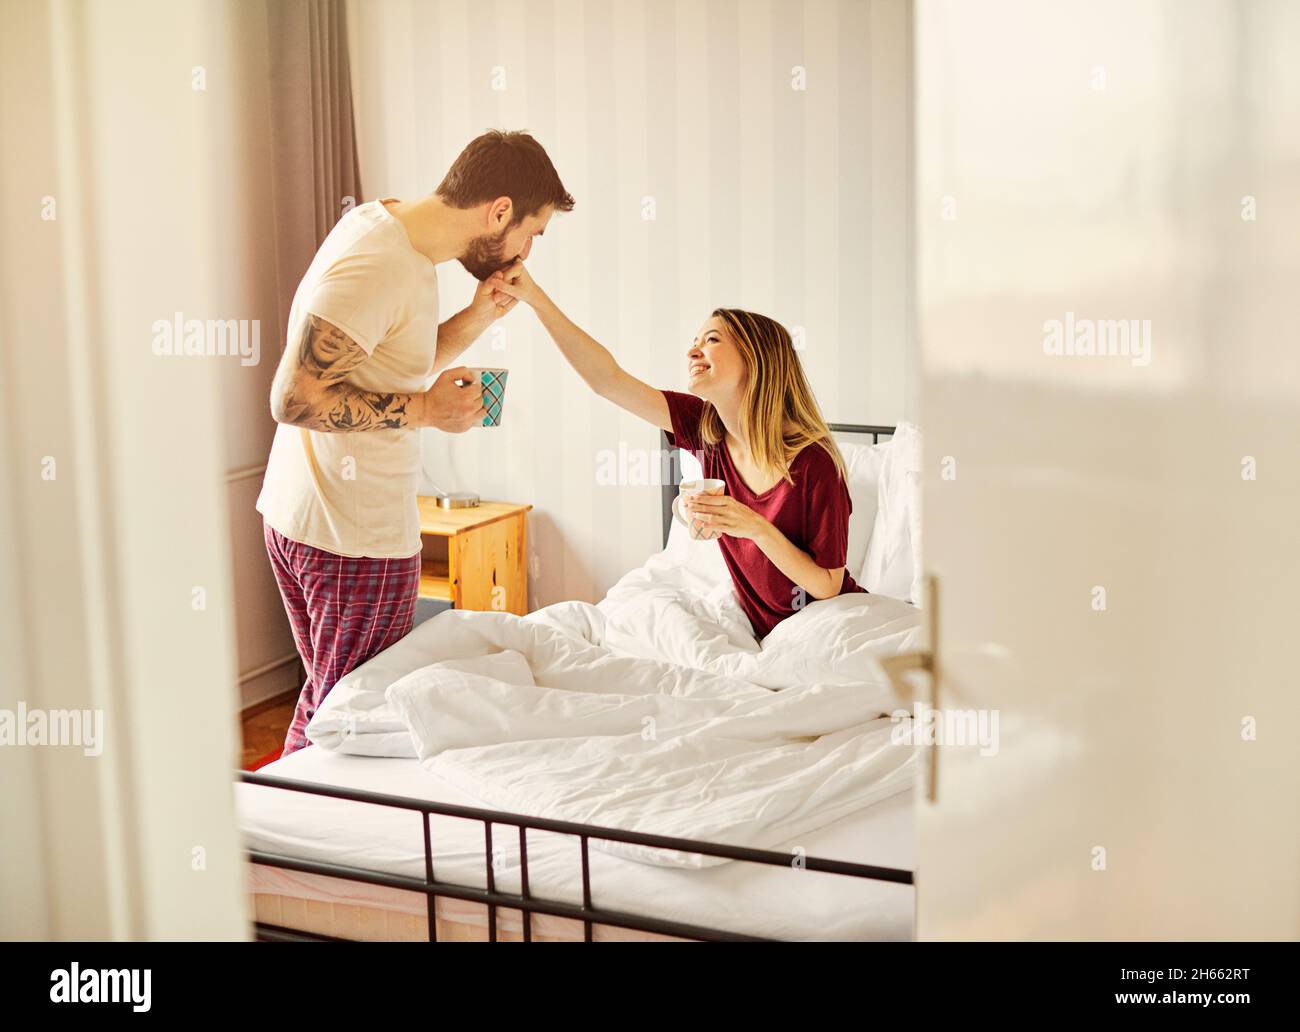 Morgen Frau Paar Bett Mann Schlafzimmer Liebe Haus Kaffee glücklich zusammen Tasse junge Freundin Romantik Stockfoto